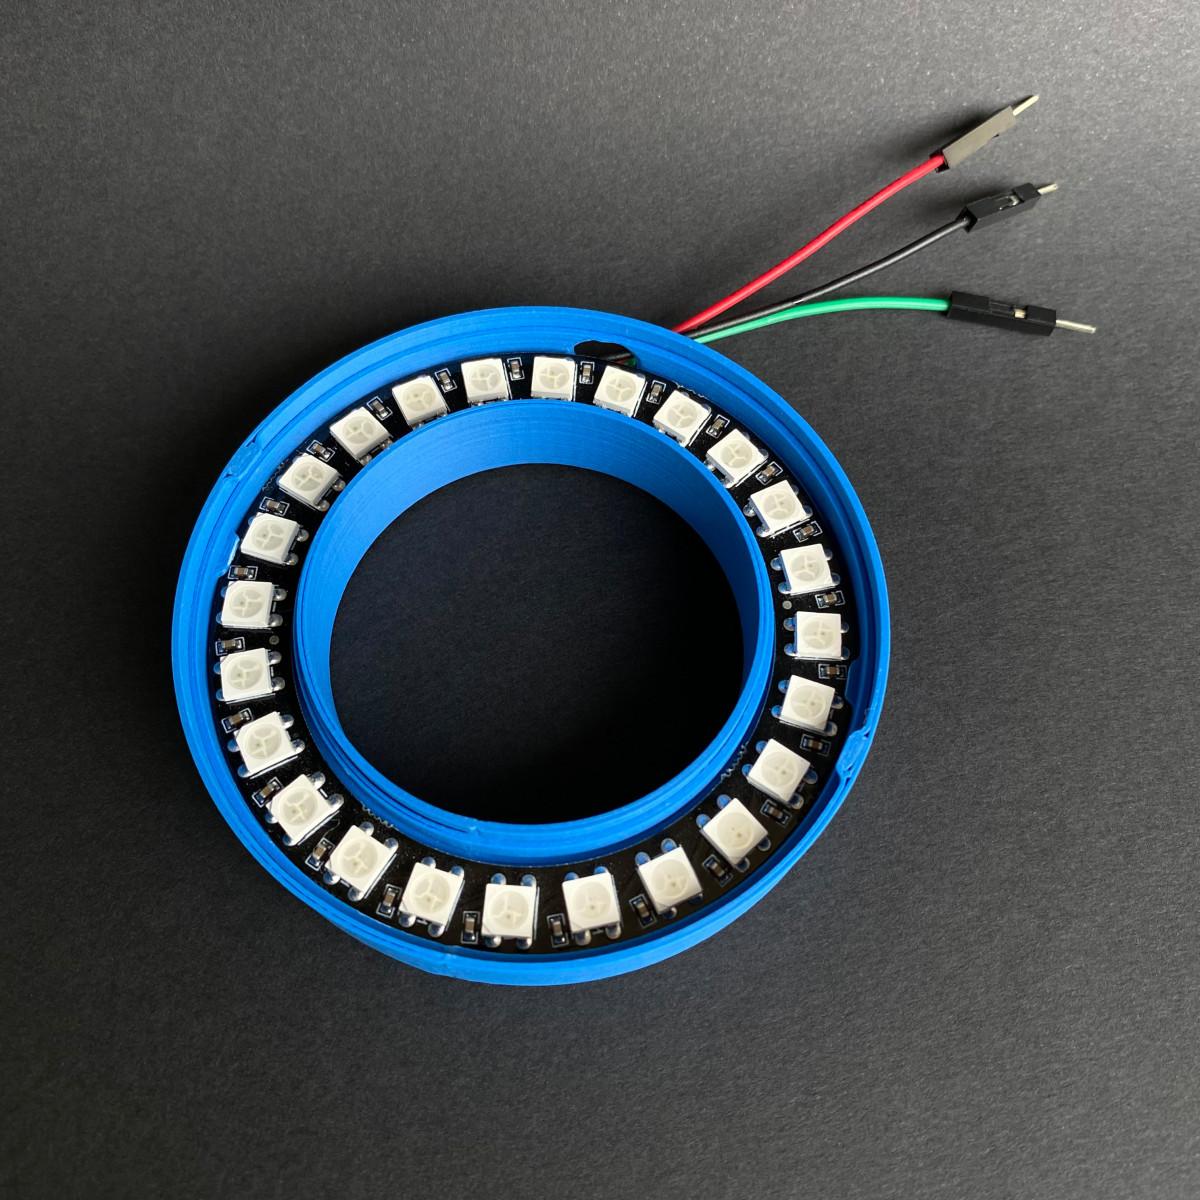 NeoPixel ring case (24 LEDs, 73mm outer diameter) 3d model